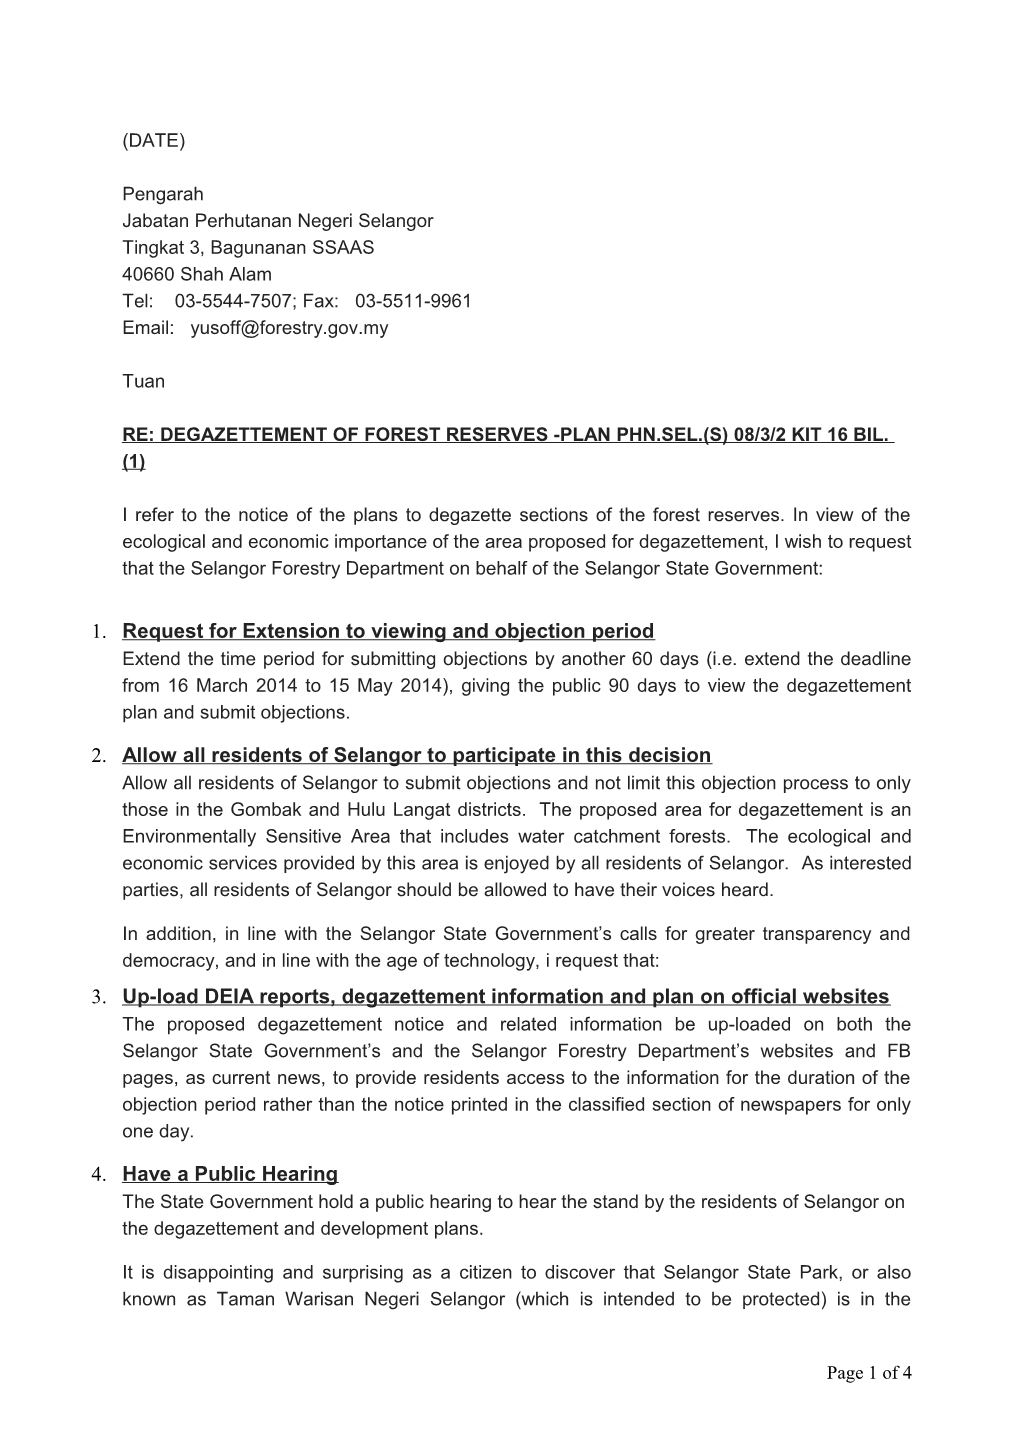 Re: Degazettement of Forest Reserves -Plan Phn.Sel.(S) 08/3/2 Kit 16 Bil. (1)